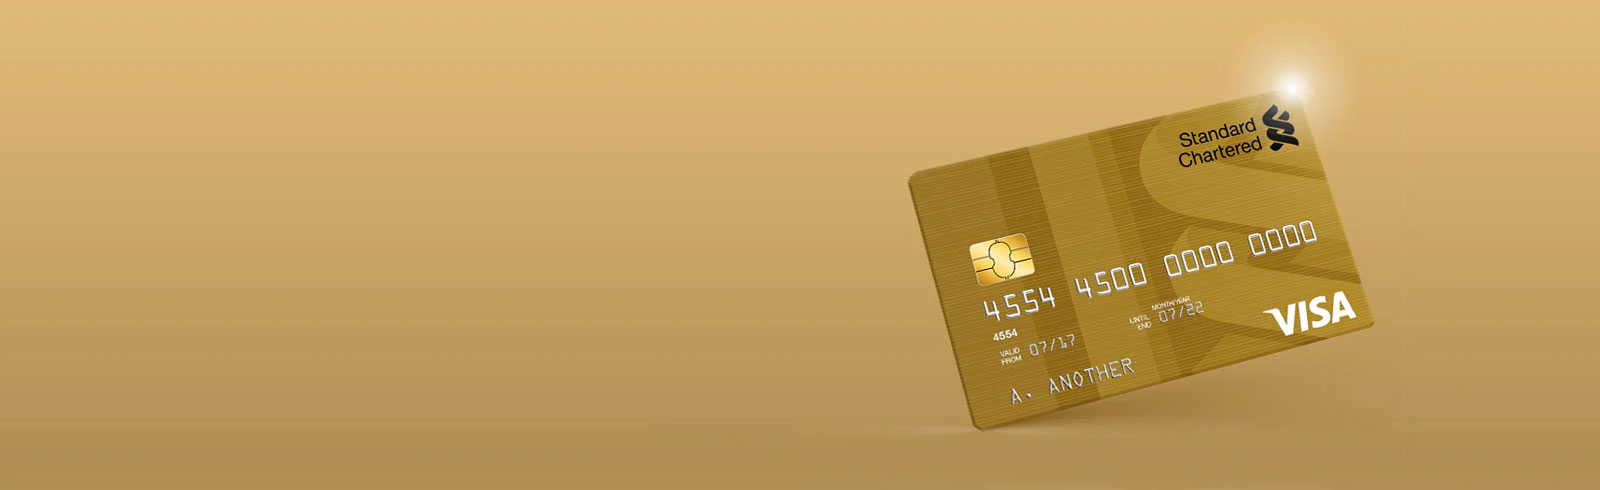 Cashback Credit card Kenya